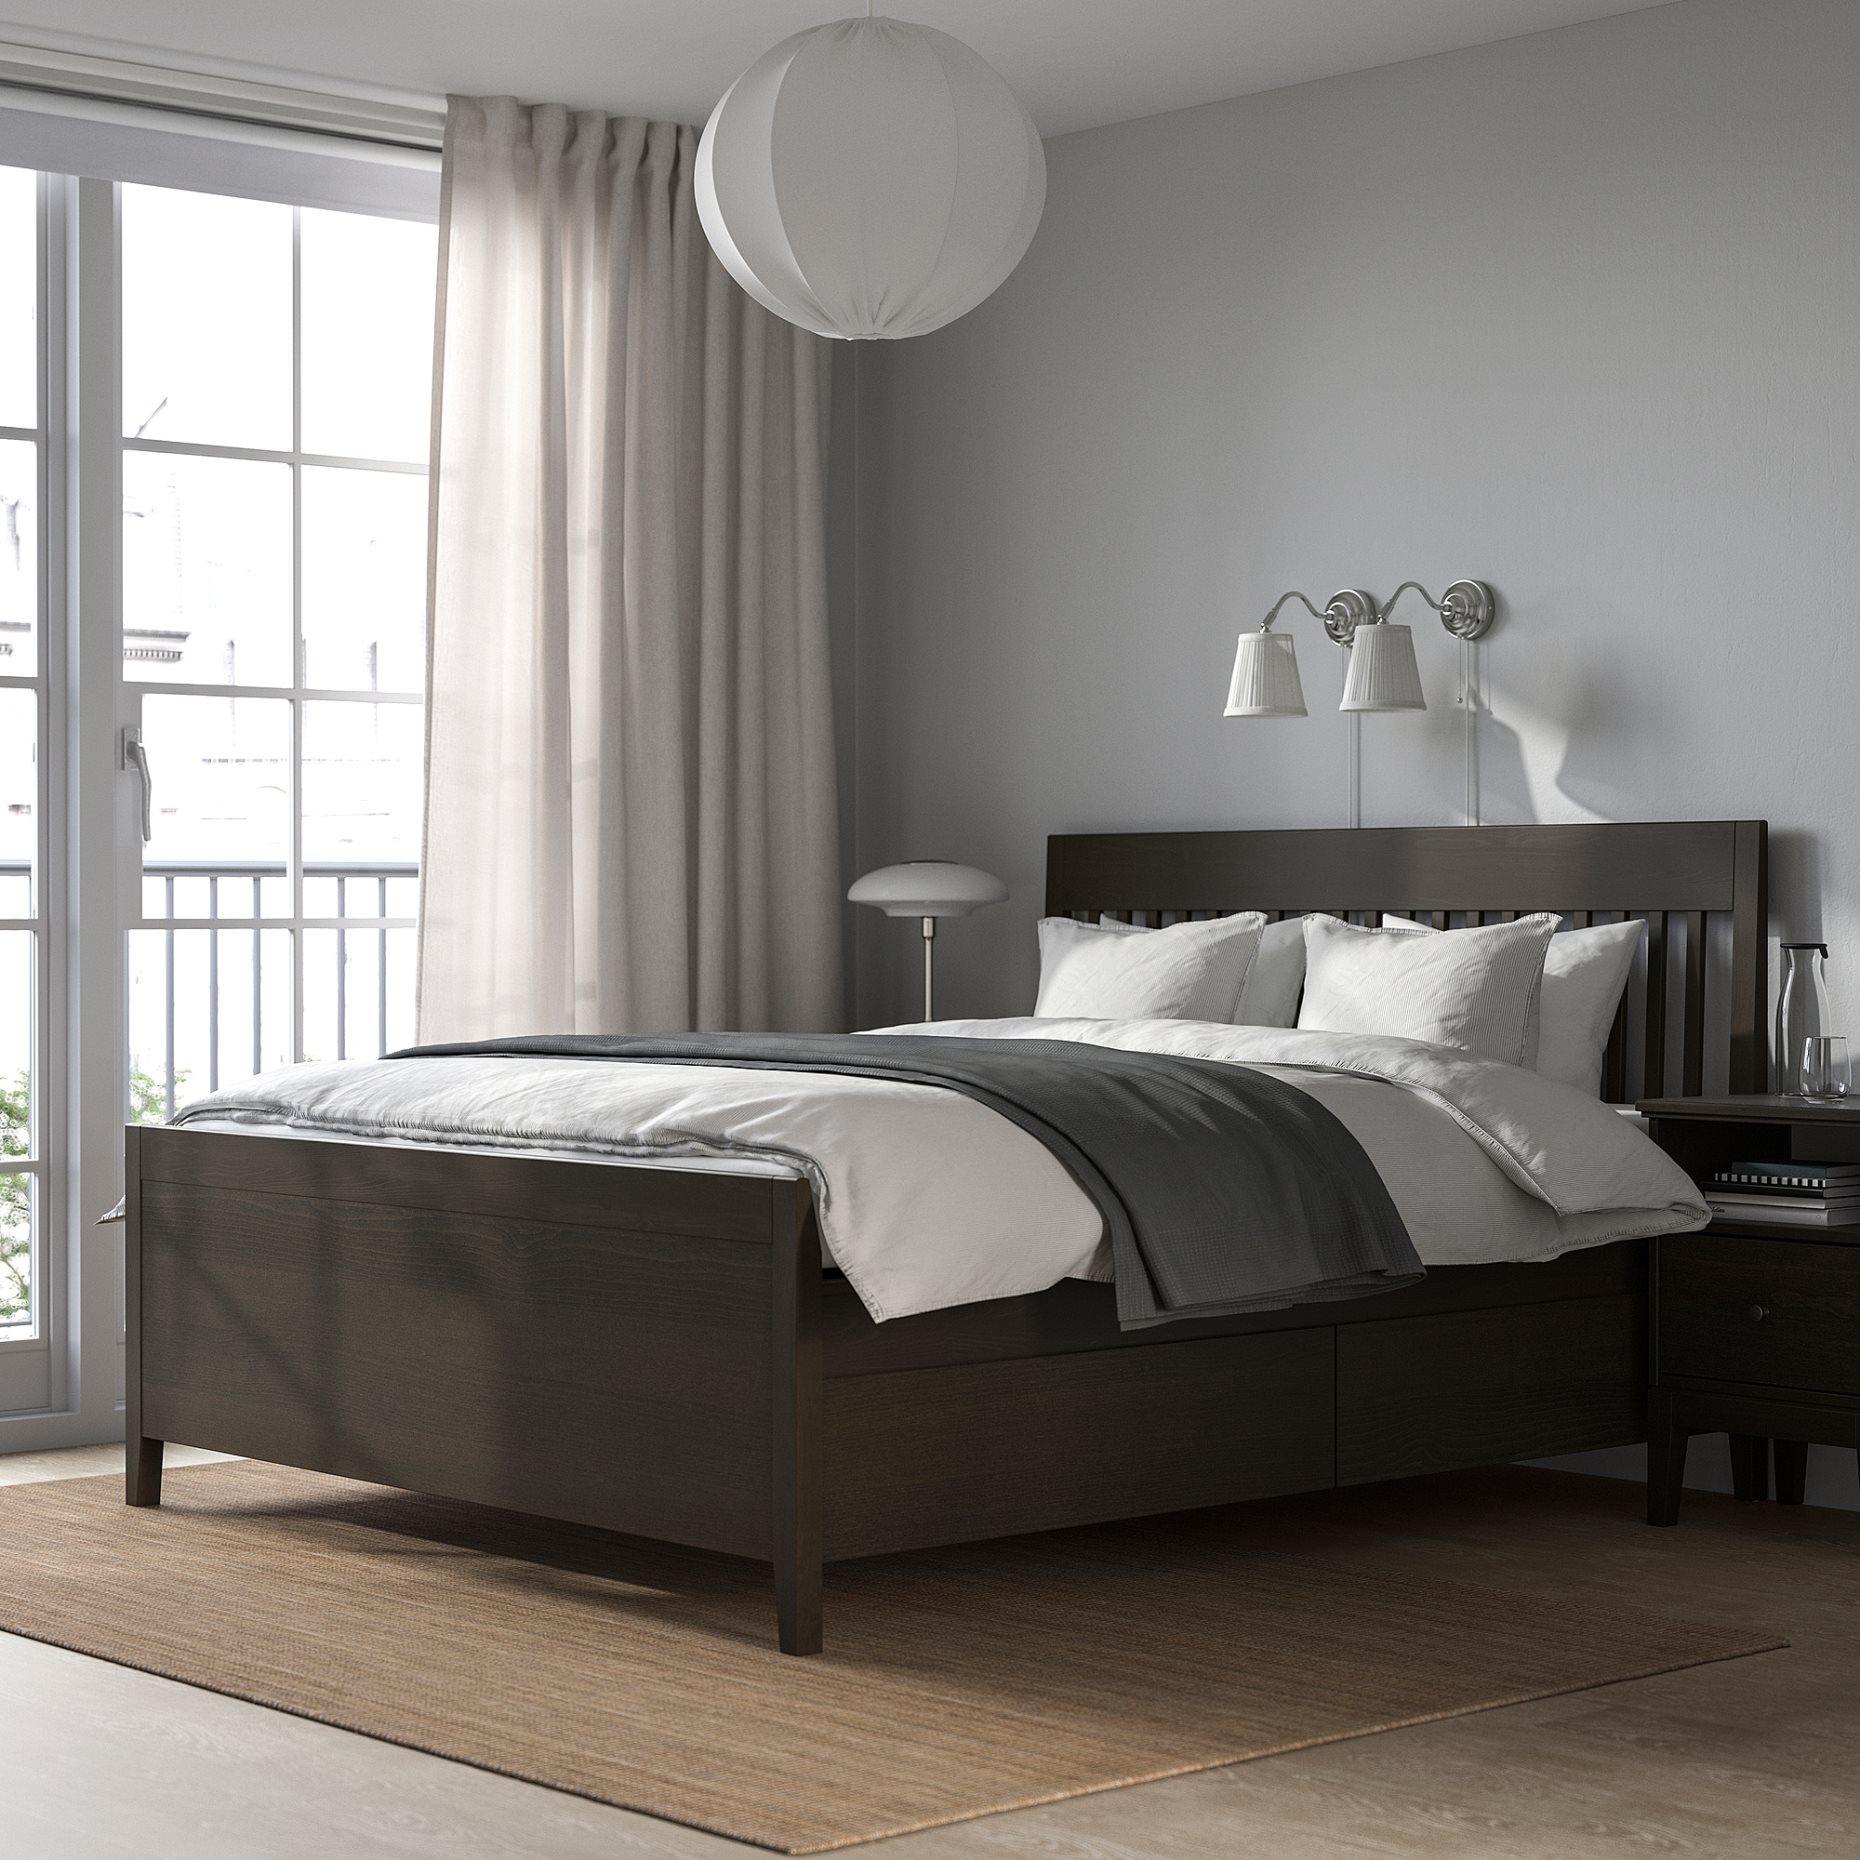 IDANÄS, bed frame with storage, 140x200 cm, 593.922.18